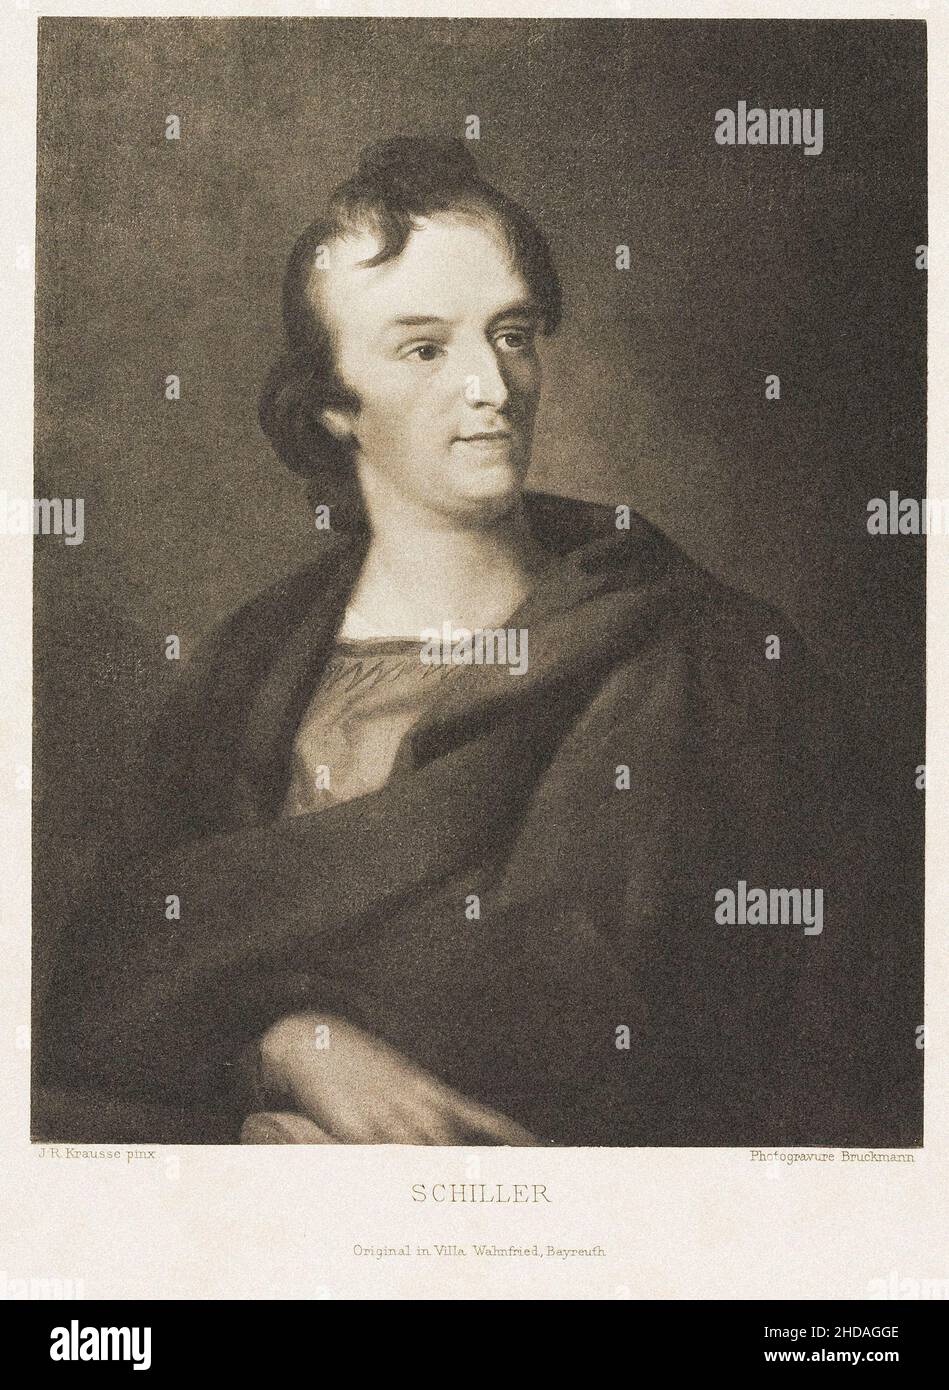 Gravure du portrait de Friedrich Schiller par J.R.Krausse.Johann Christoph Friedrich (von) Schiller (1759 – 1805) était un dramaturge, poète et p allemand Banque D'Images